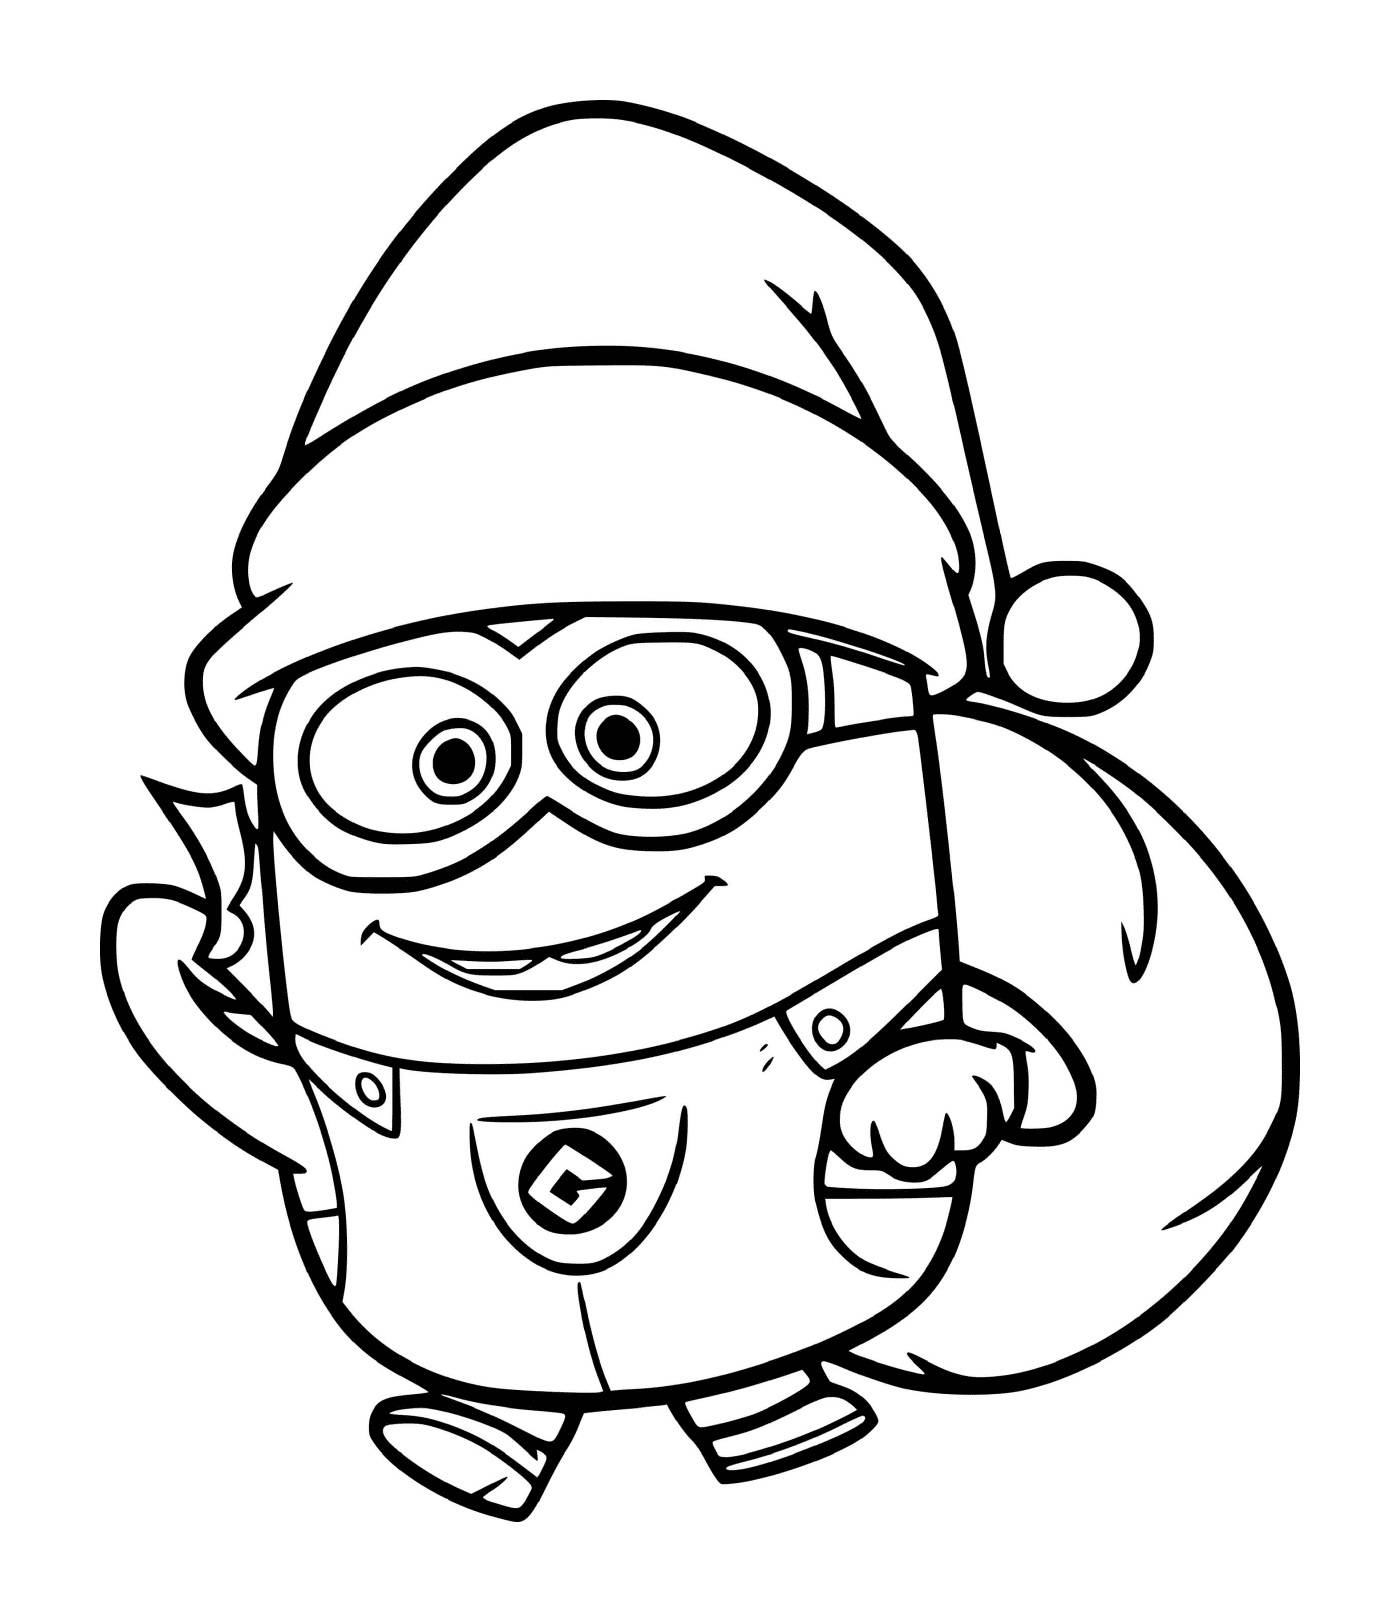  Minion in Santa's costume 